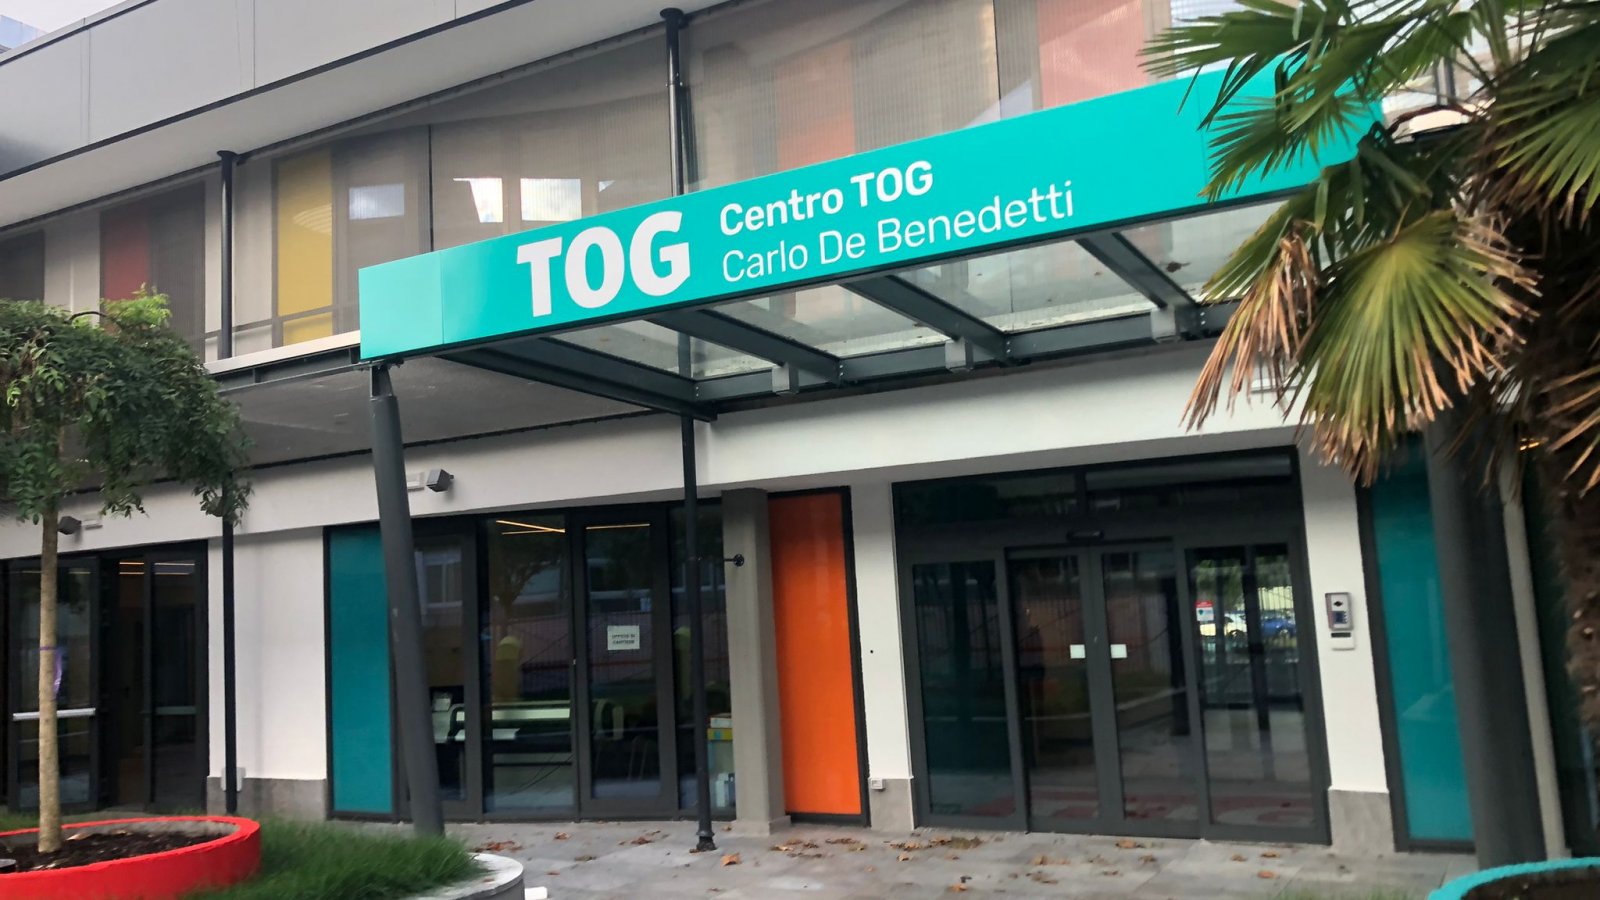 The TOG Carlo De Benedetti Centre will soon be inaugurated